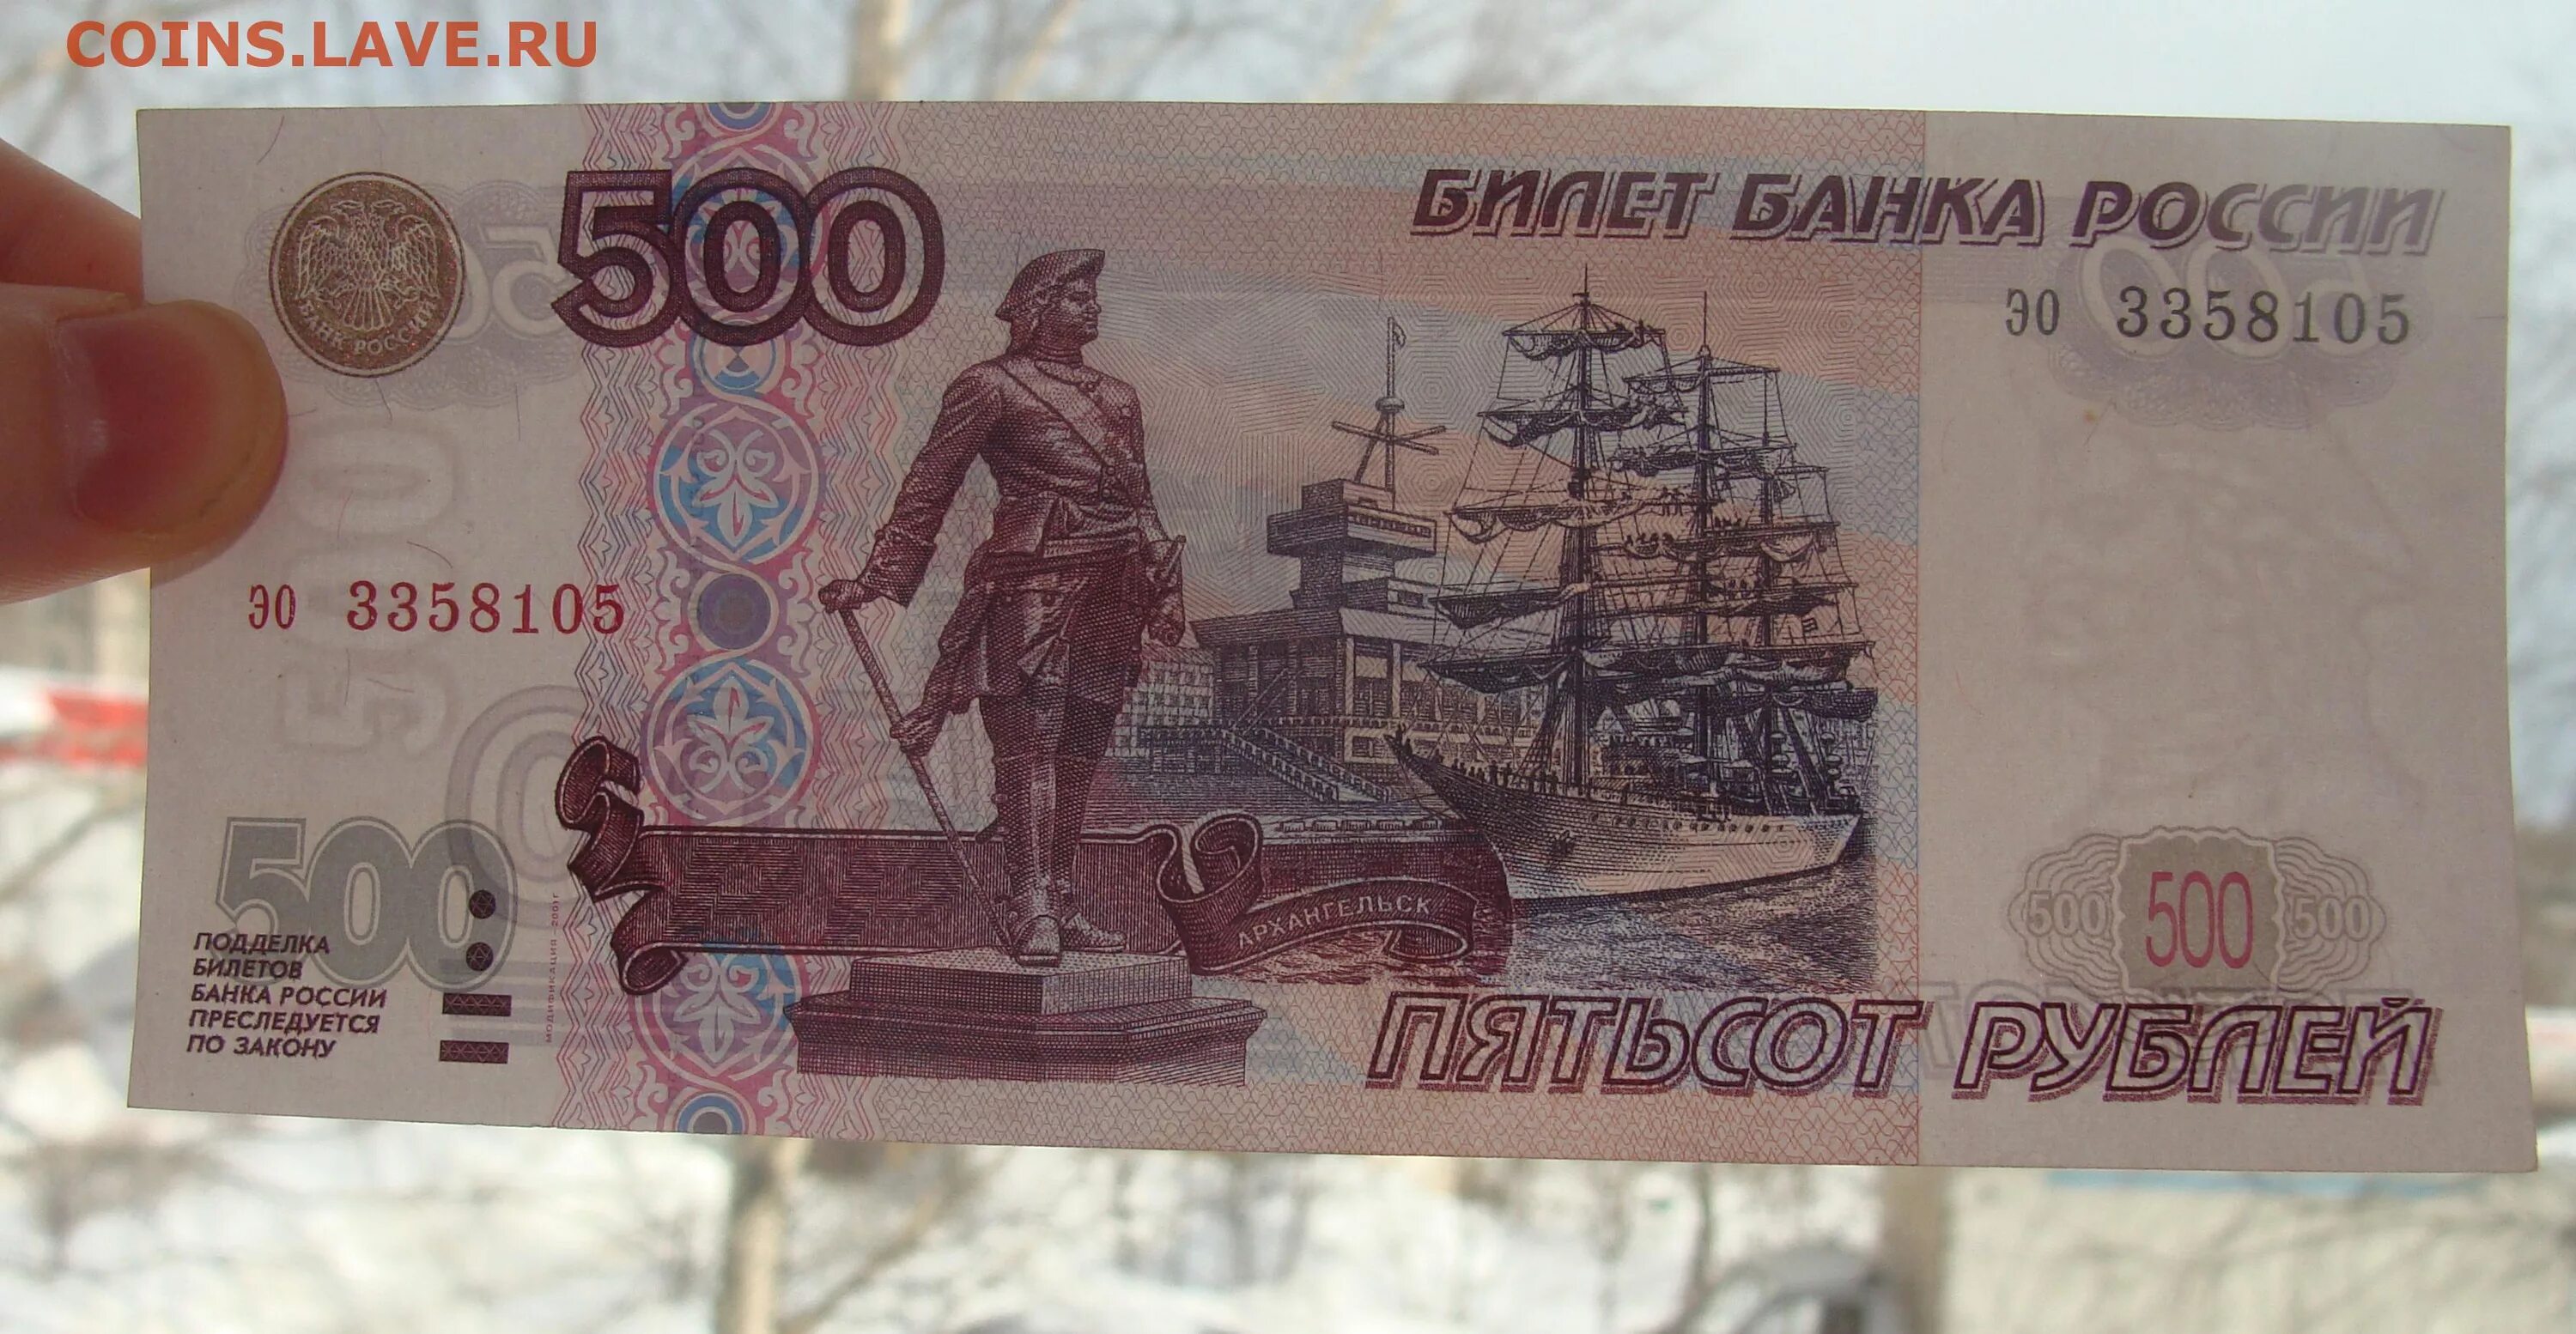 500 Рублей фальшивка и оригинал.